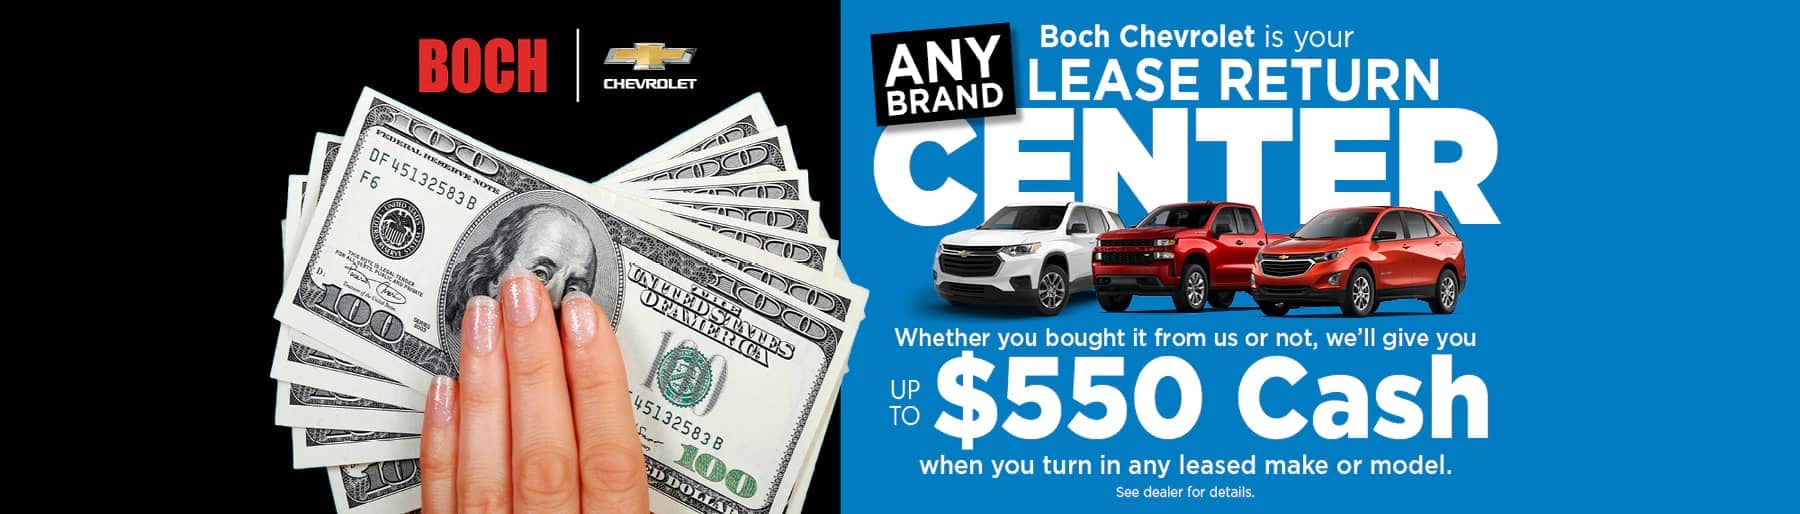 Boch Chevrolet Norwood - Lease Return Center Banner